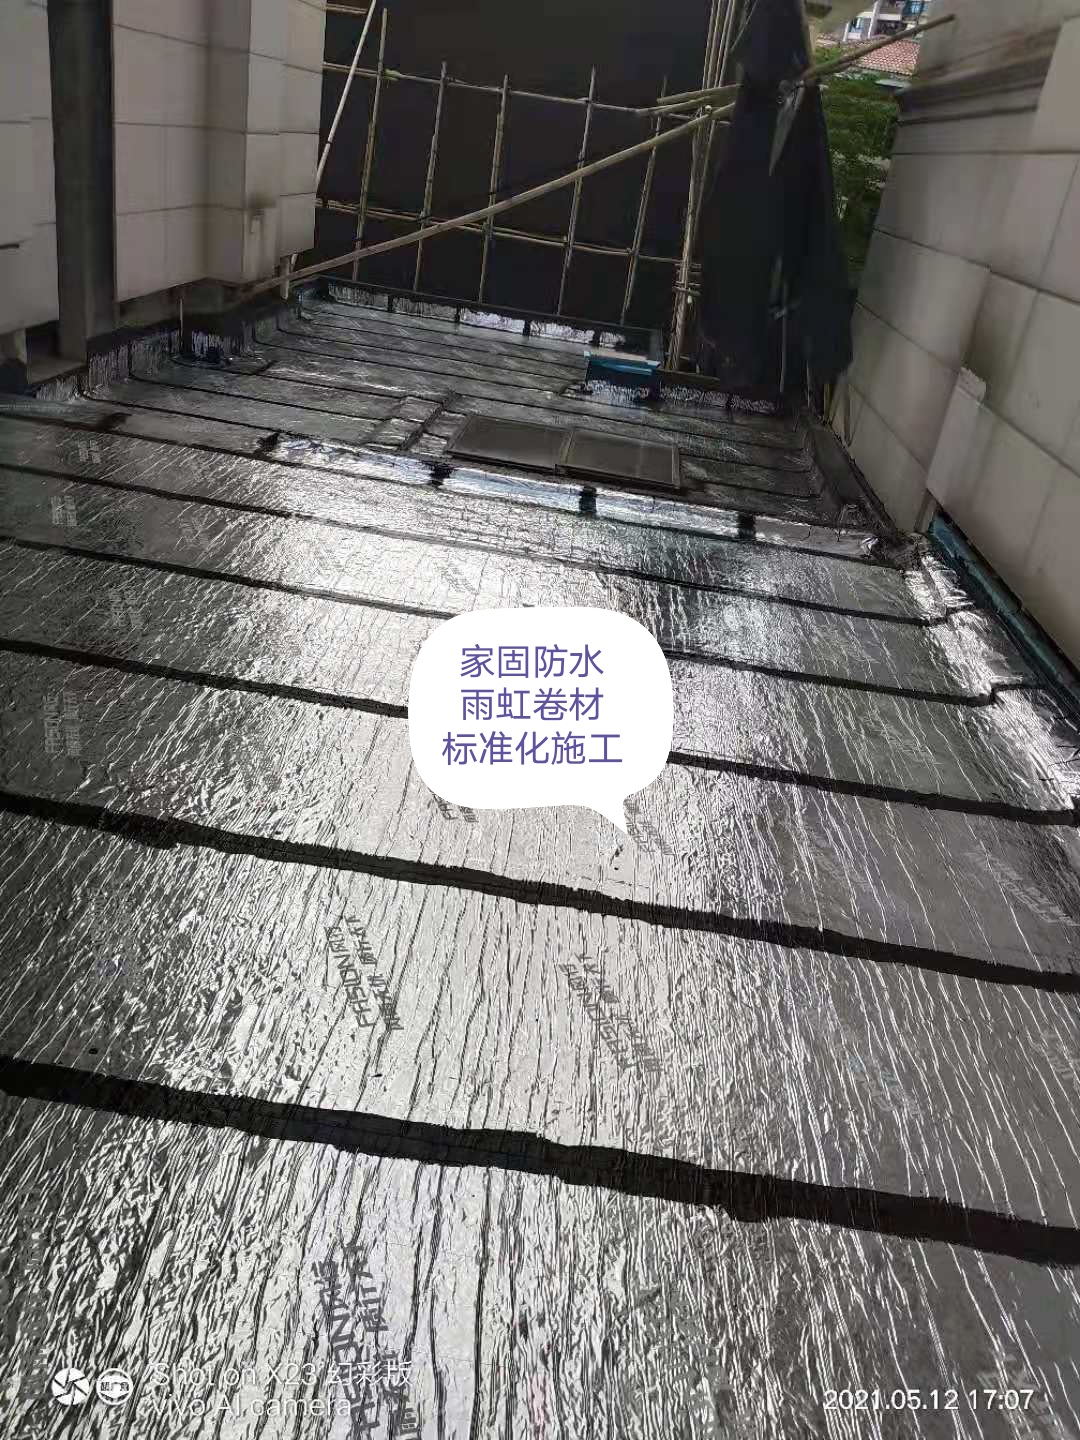 东莞市家固防水建筑工程有限公司